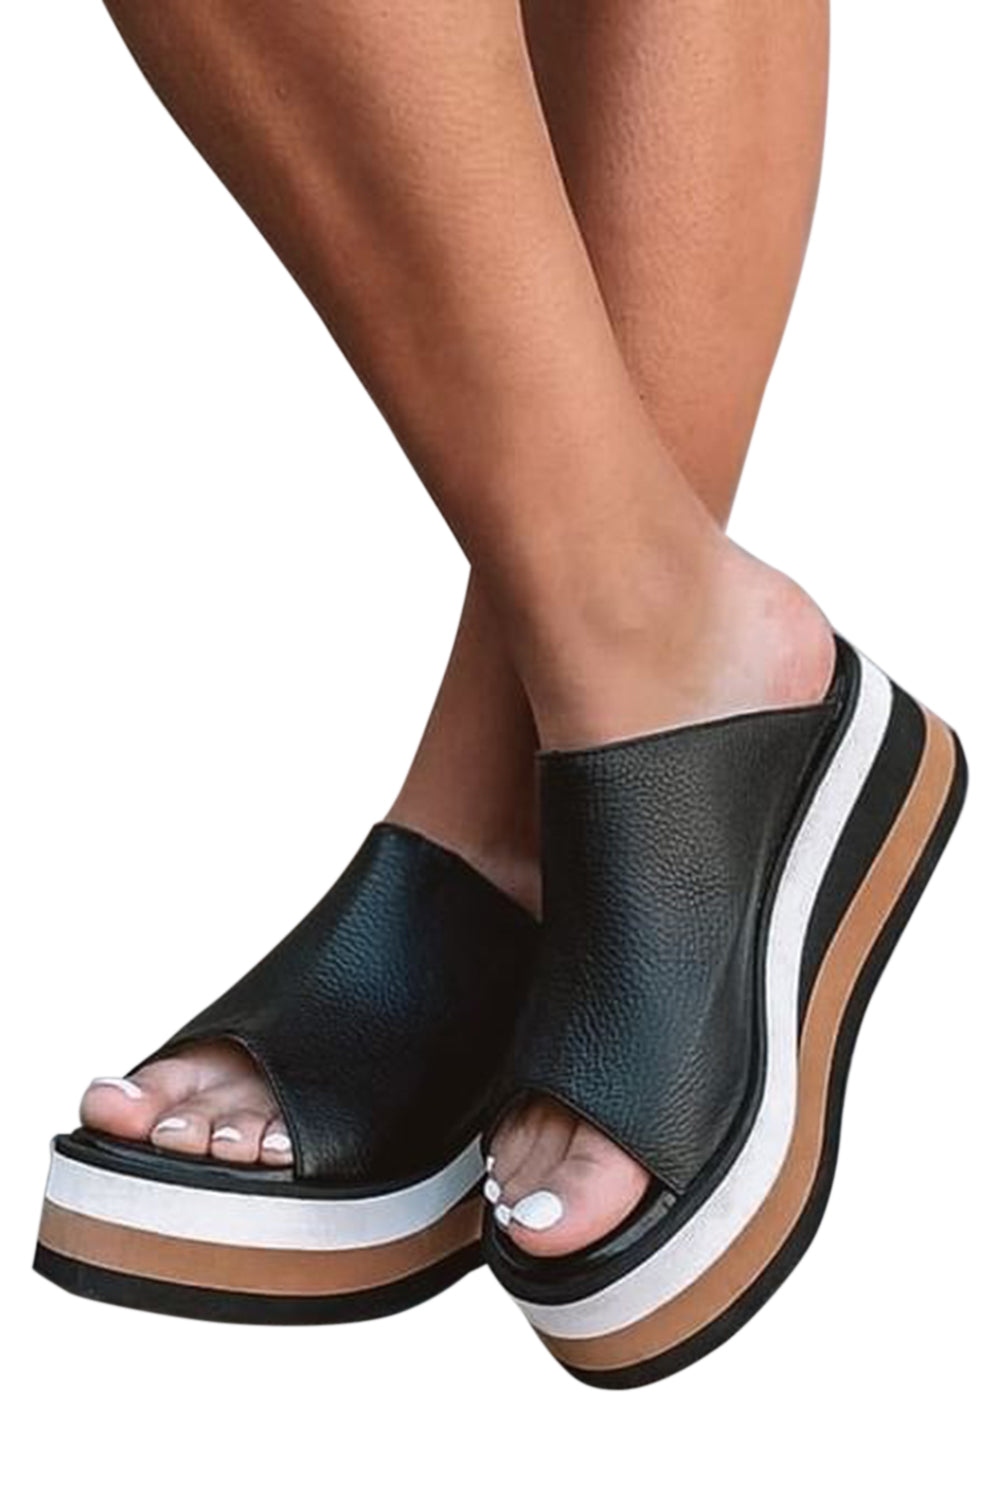 Black Color-Blocking Peep Toe Wedge Heel Sandals